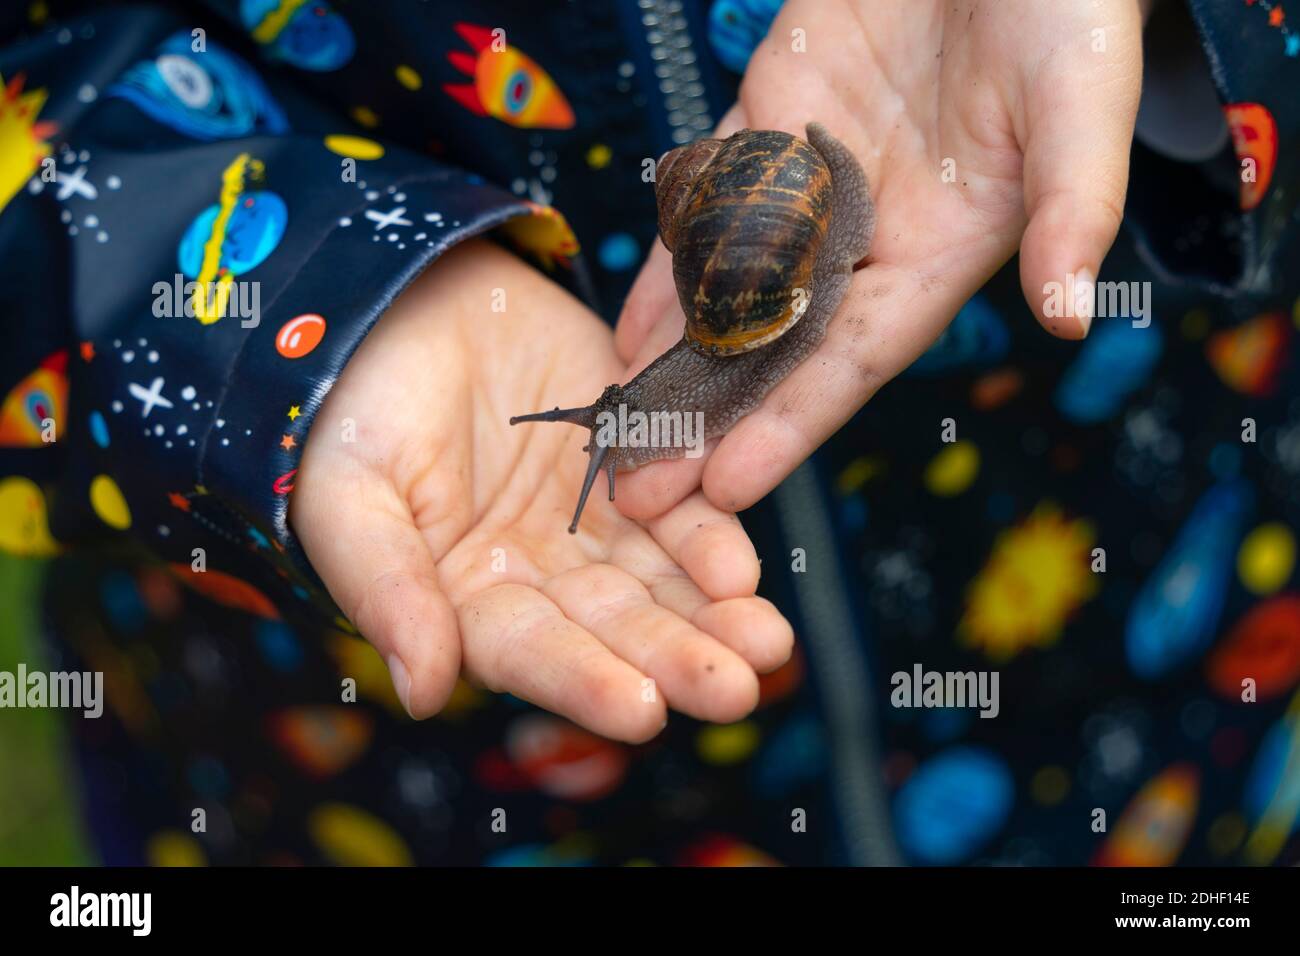 Jeune enfant tenant un escargot dans les paumes des mains Banque D'Images